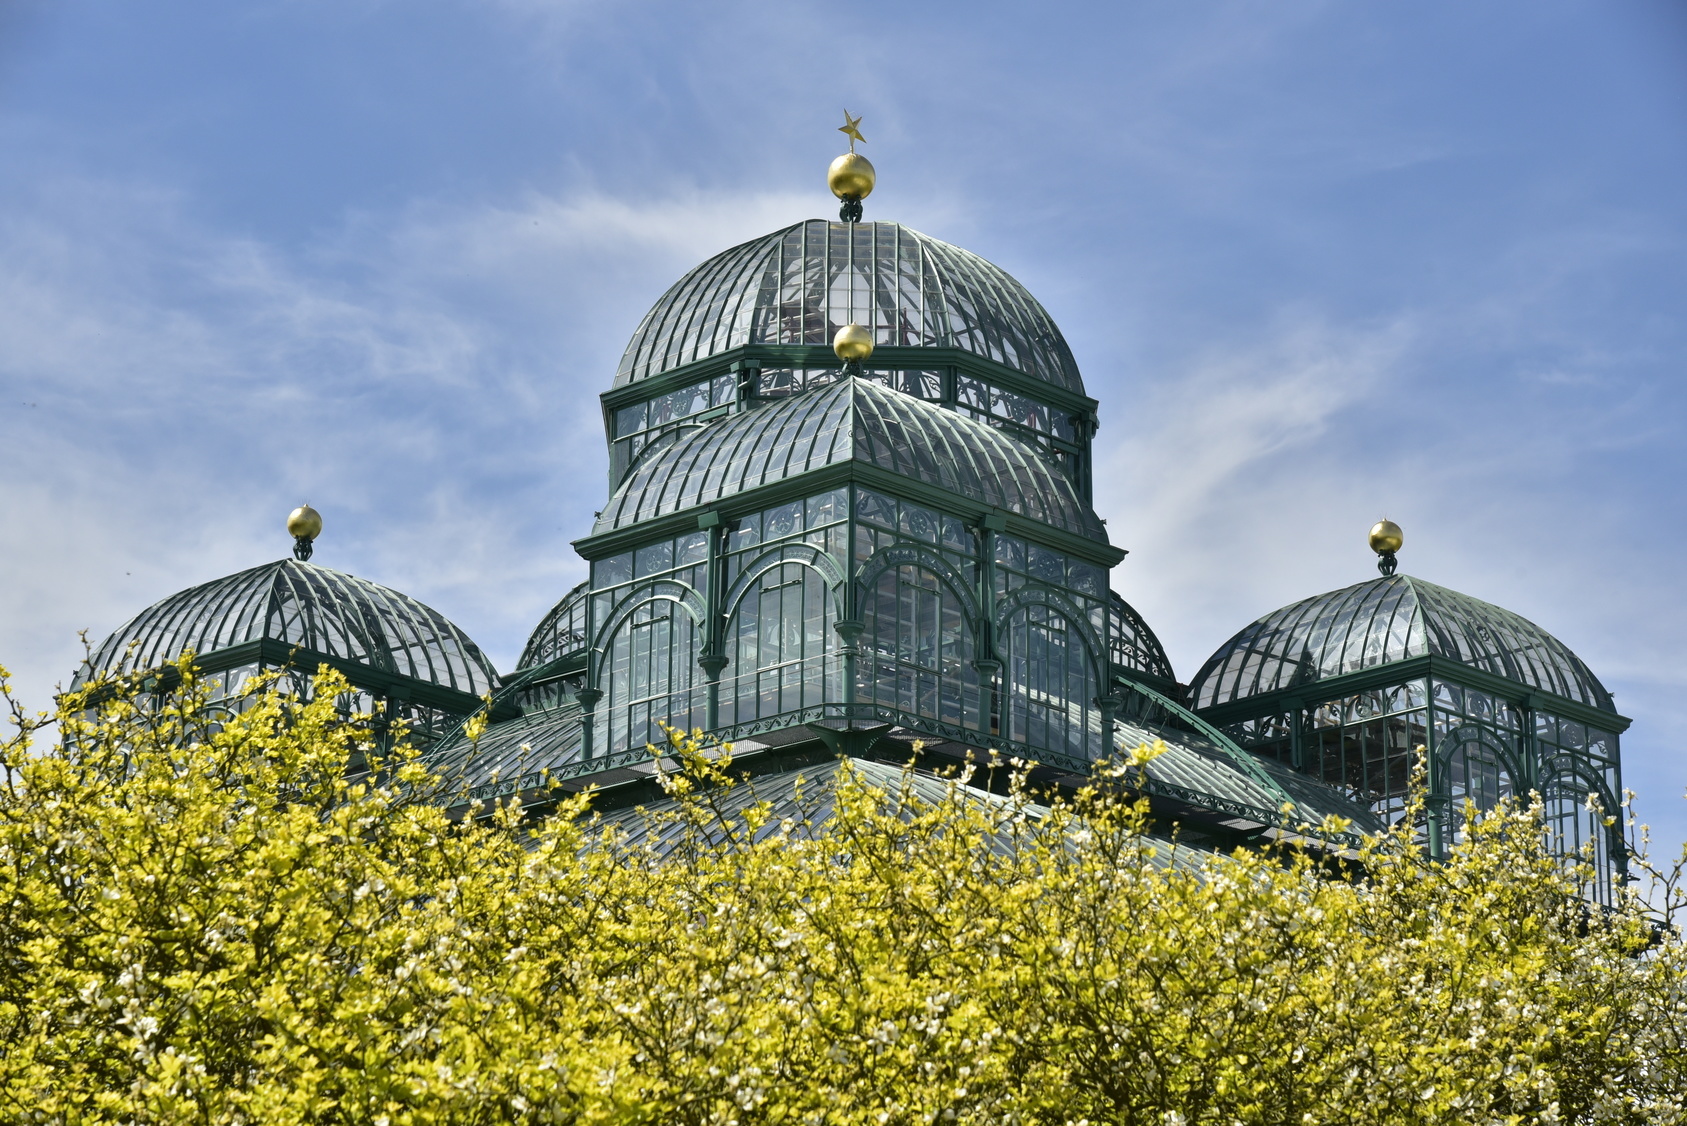 Nhà kính ở quận Laeken của Thủ đô Brussels nằm ngay trong Dinh thự Hoàng gia Bỉ. Công trình được xây dựng vào cuối thế kỷ 19.